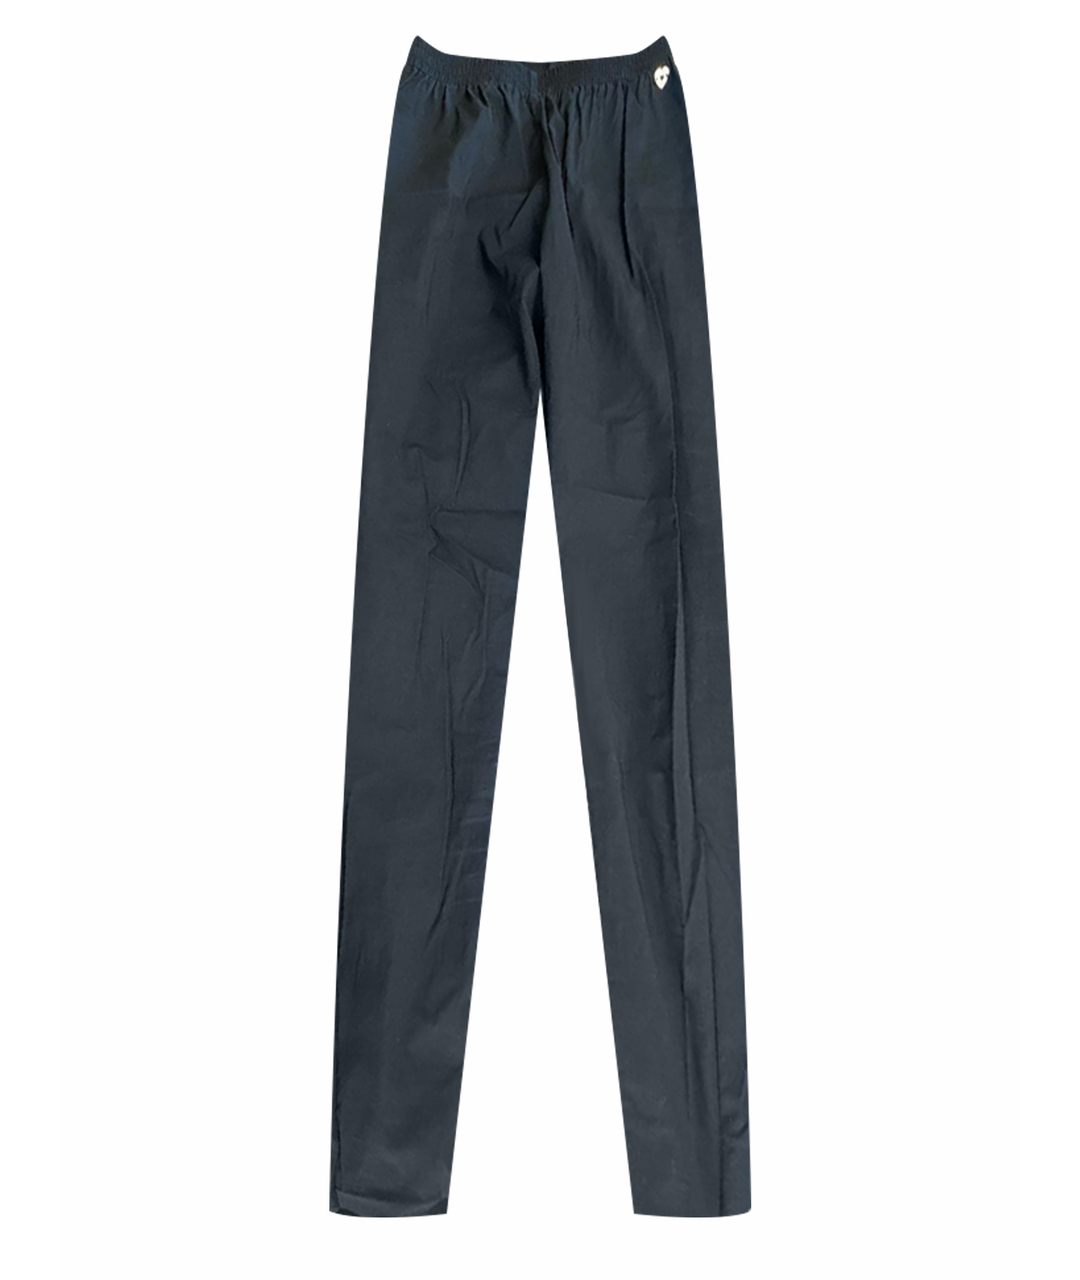 TWIN-SET Черные хлопковые брюки узкие, фото 1